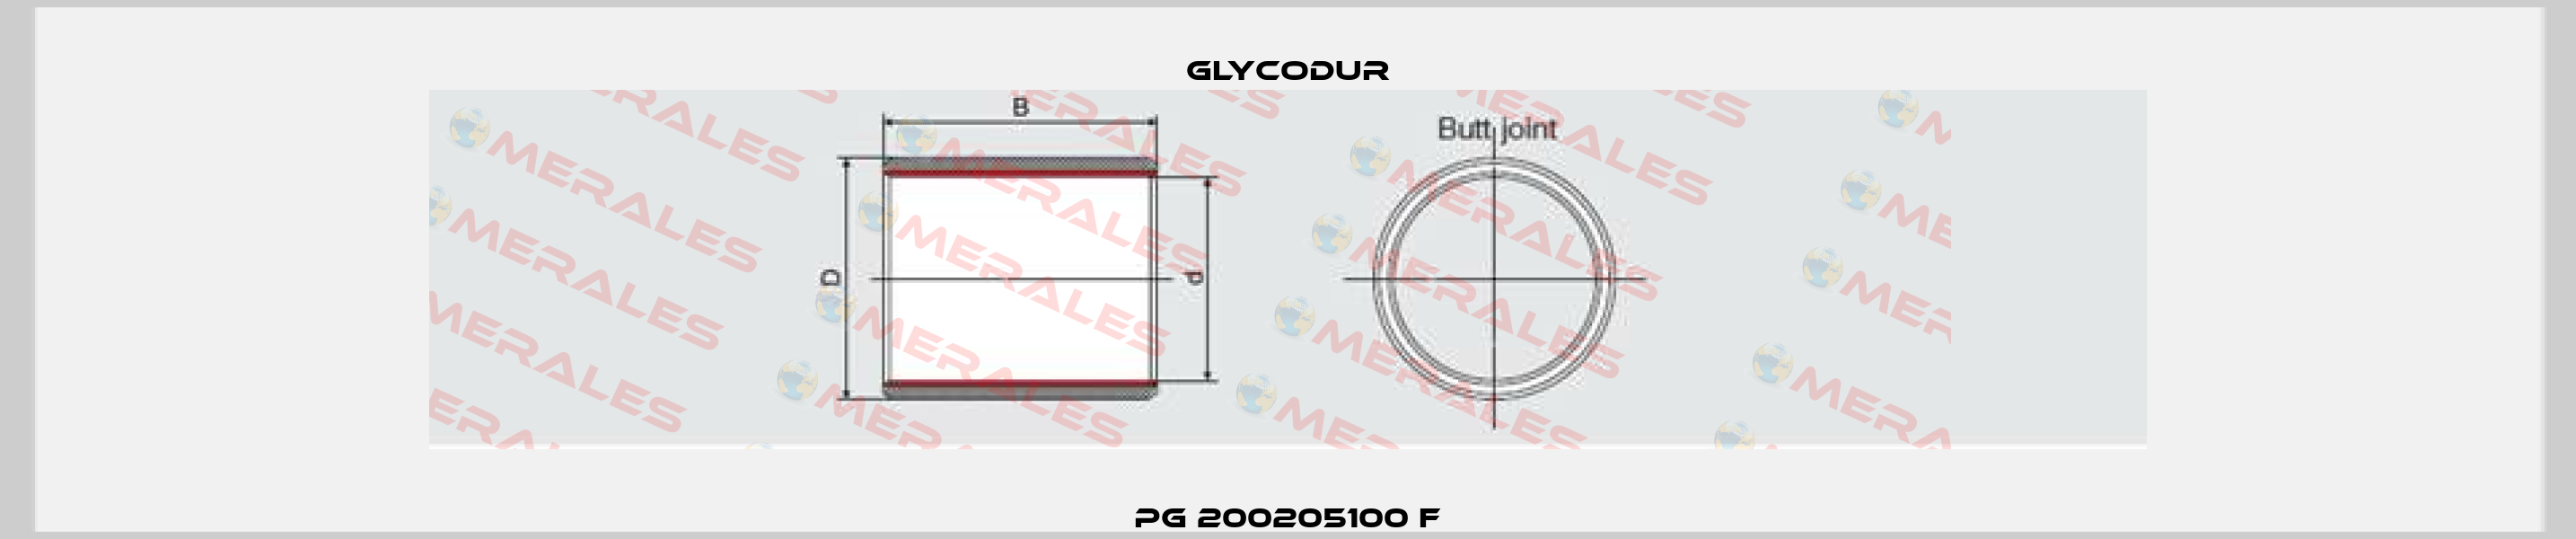 PG 200205100 F Glycodur